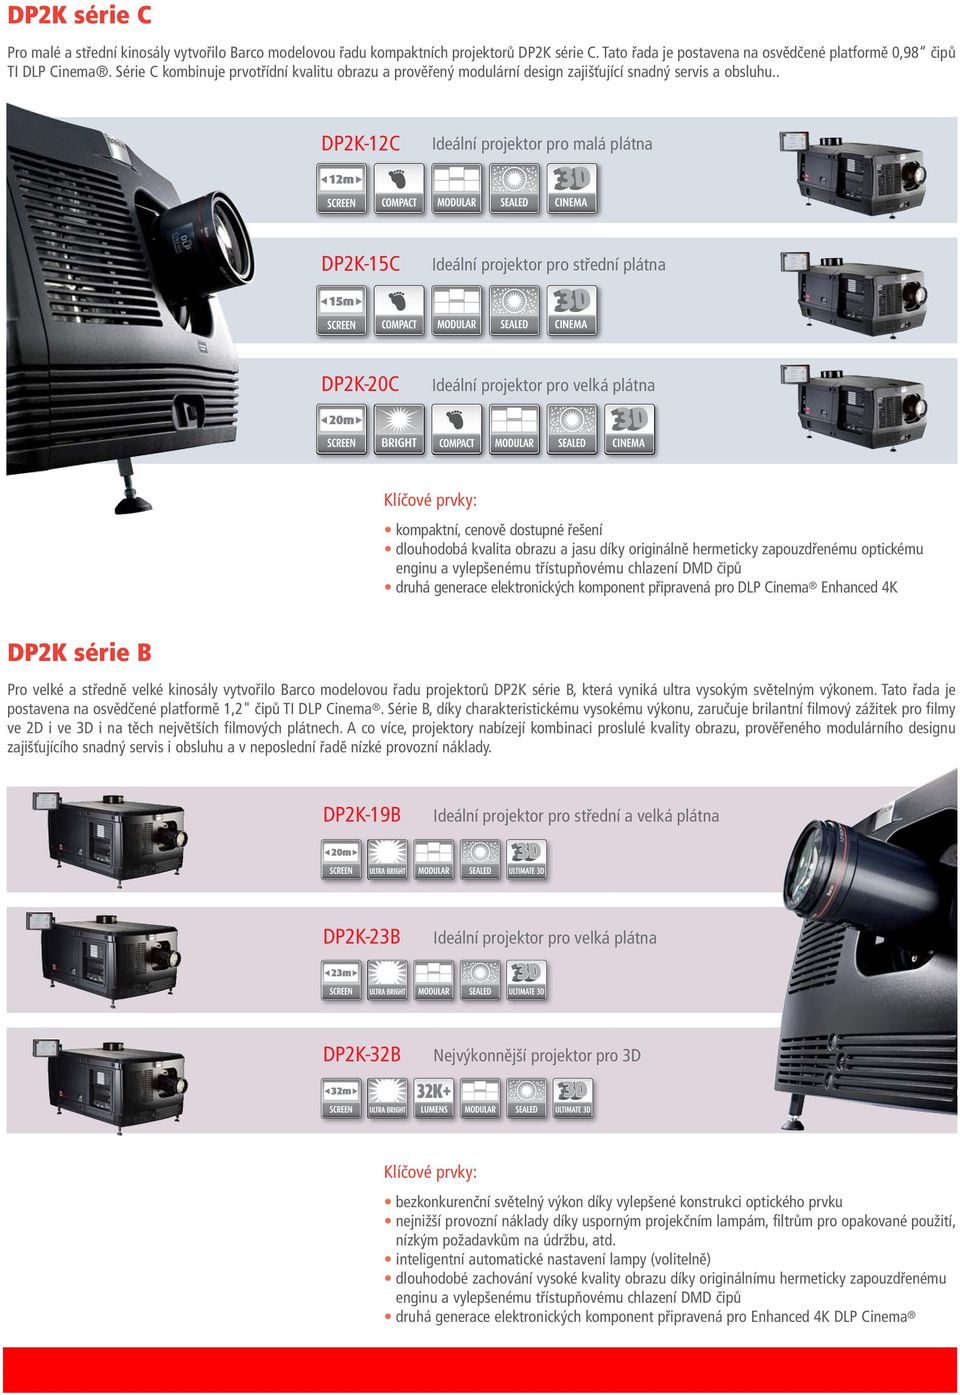 . DP2K-12C Ideální projektor pro malá plátna DP2K-15C Ideální projektor pro střední plátna DP2K-20C Ideální projektor pro velká plátna Klíčové prvky: kompaktní, cenově dostupné řešení dlouhodobá